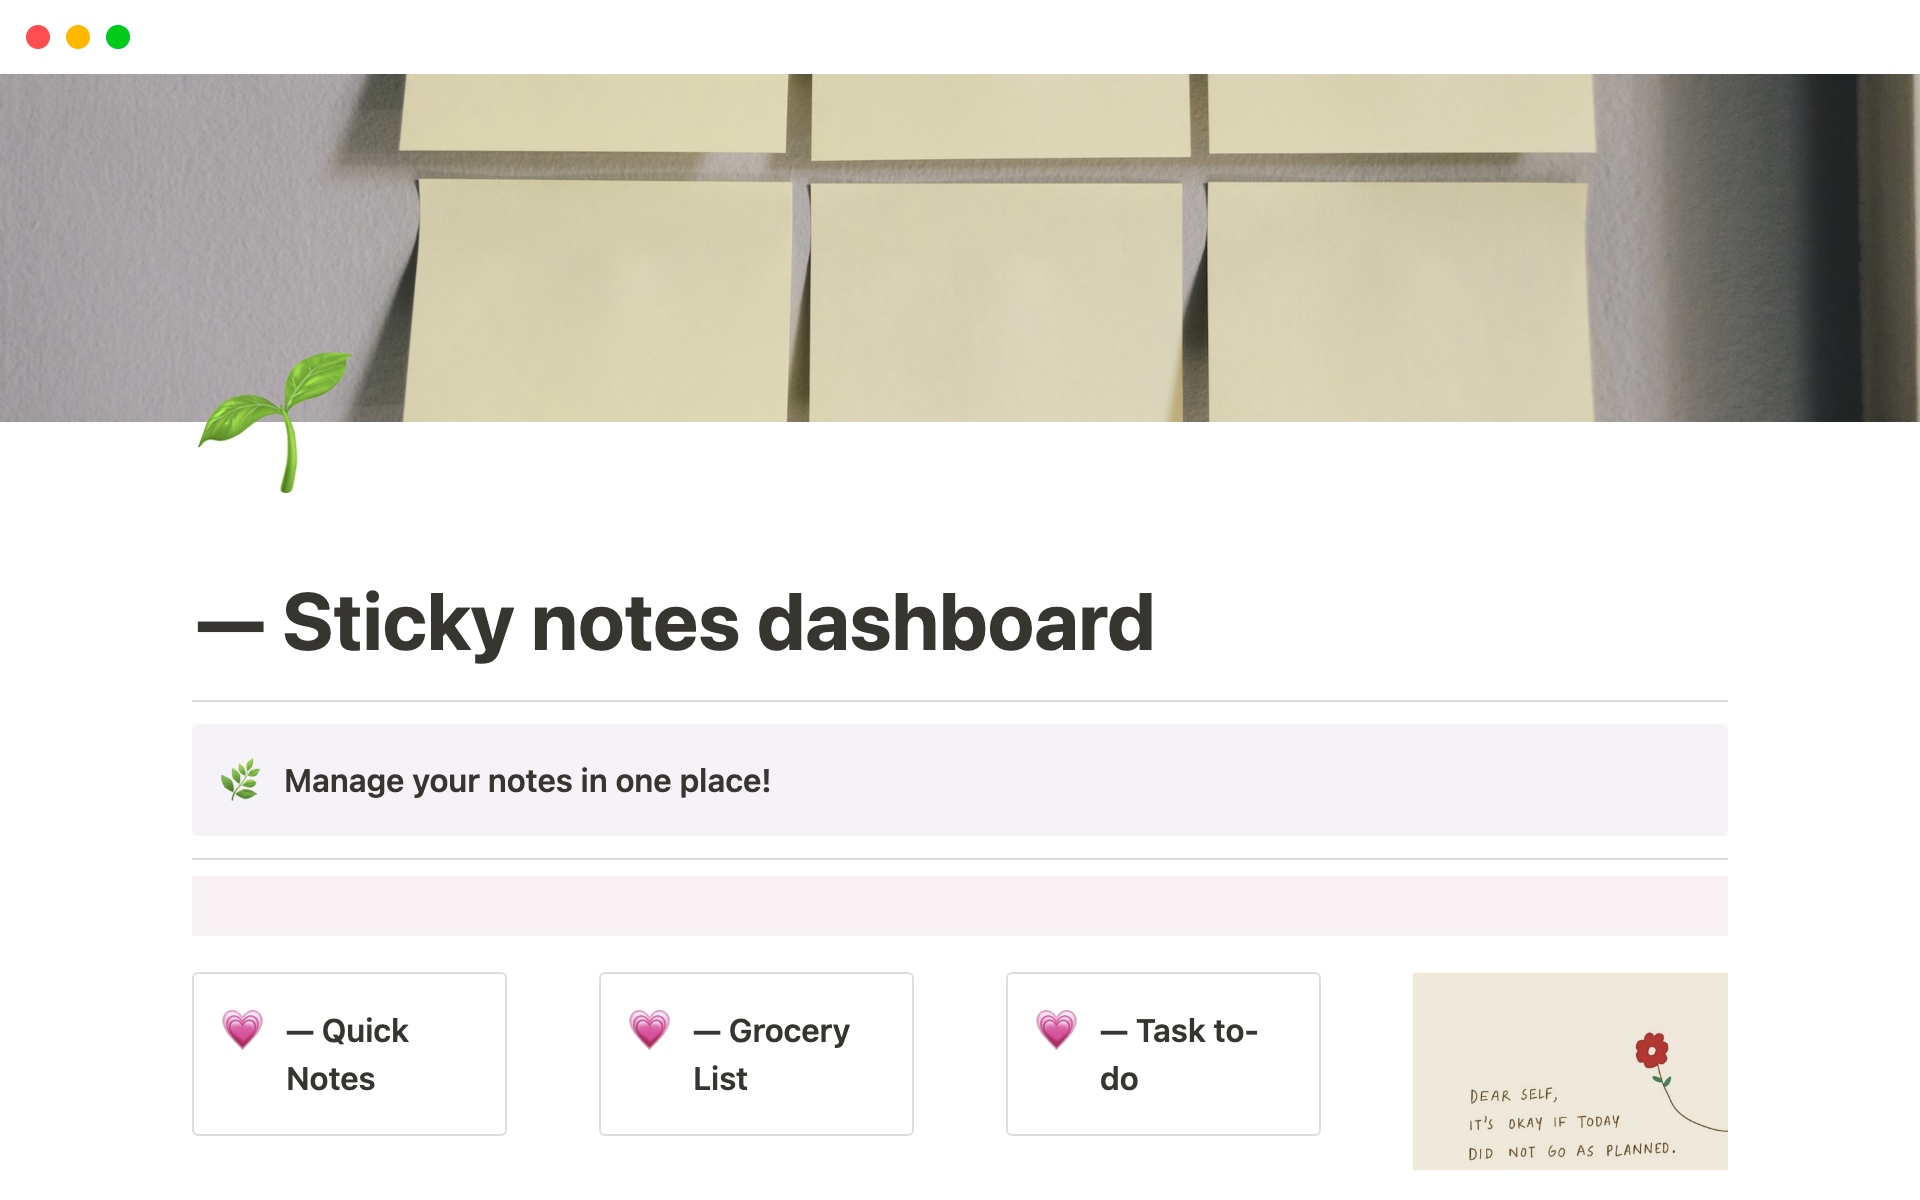 Eine Vorlagenvorschau für Sticky Notes Dashboard